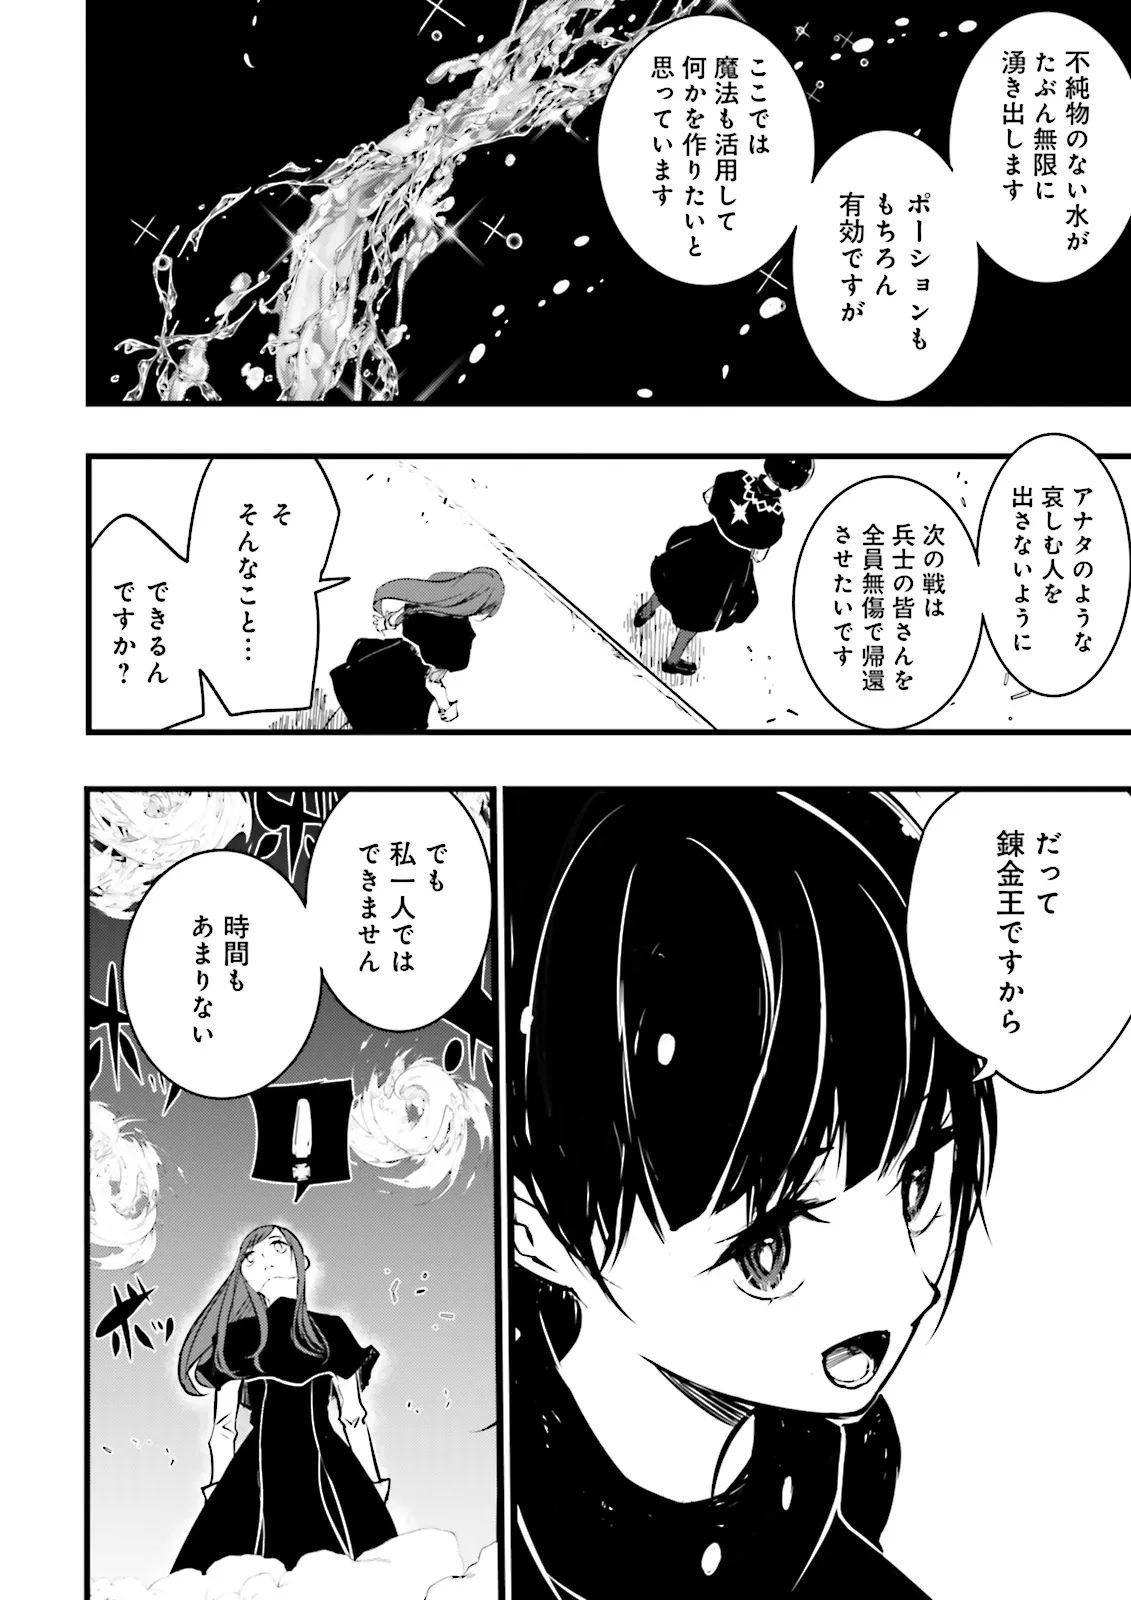 Sukiru Ga Nakereba Level wo Ageru ~ 99 Ga Kansuto No Sekai De Reberu 800 Man Kara Sutato ~ - Chapter 38.4 - Page 4